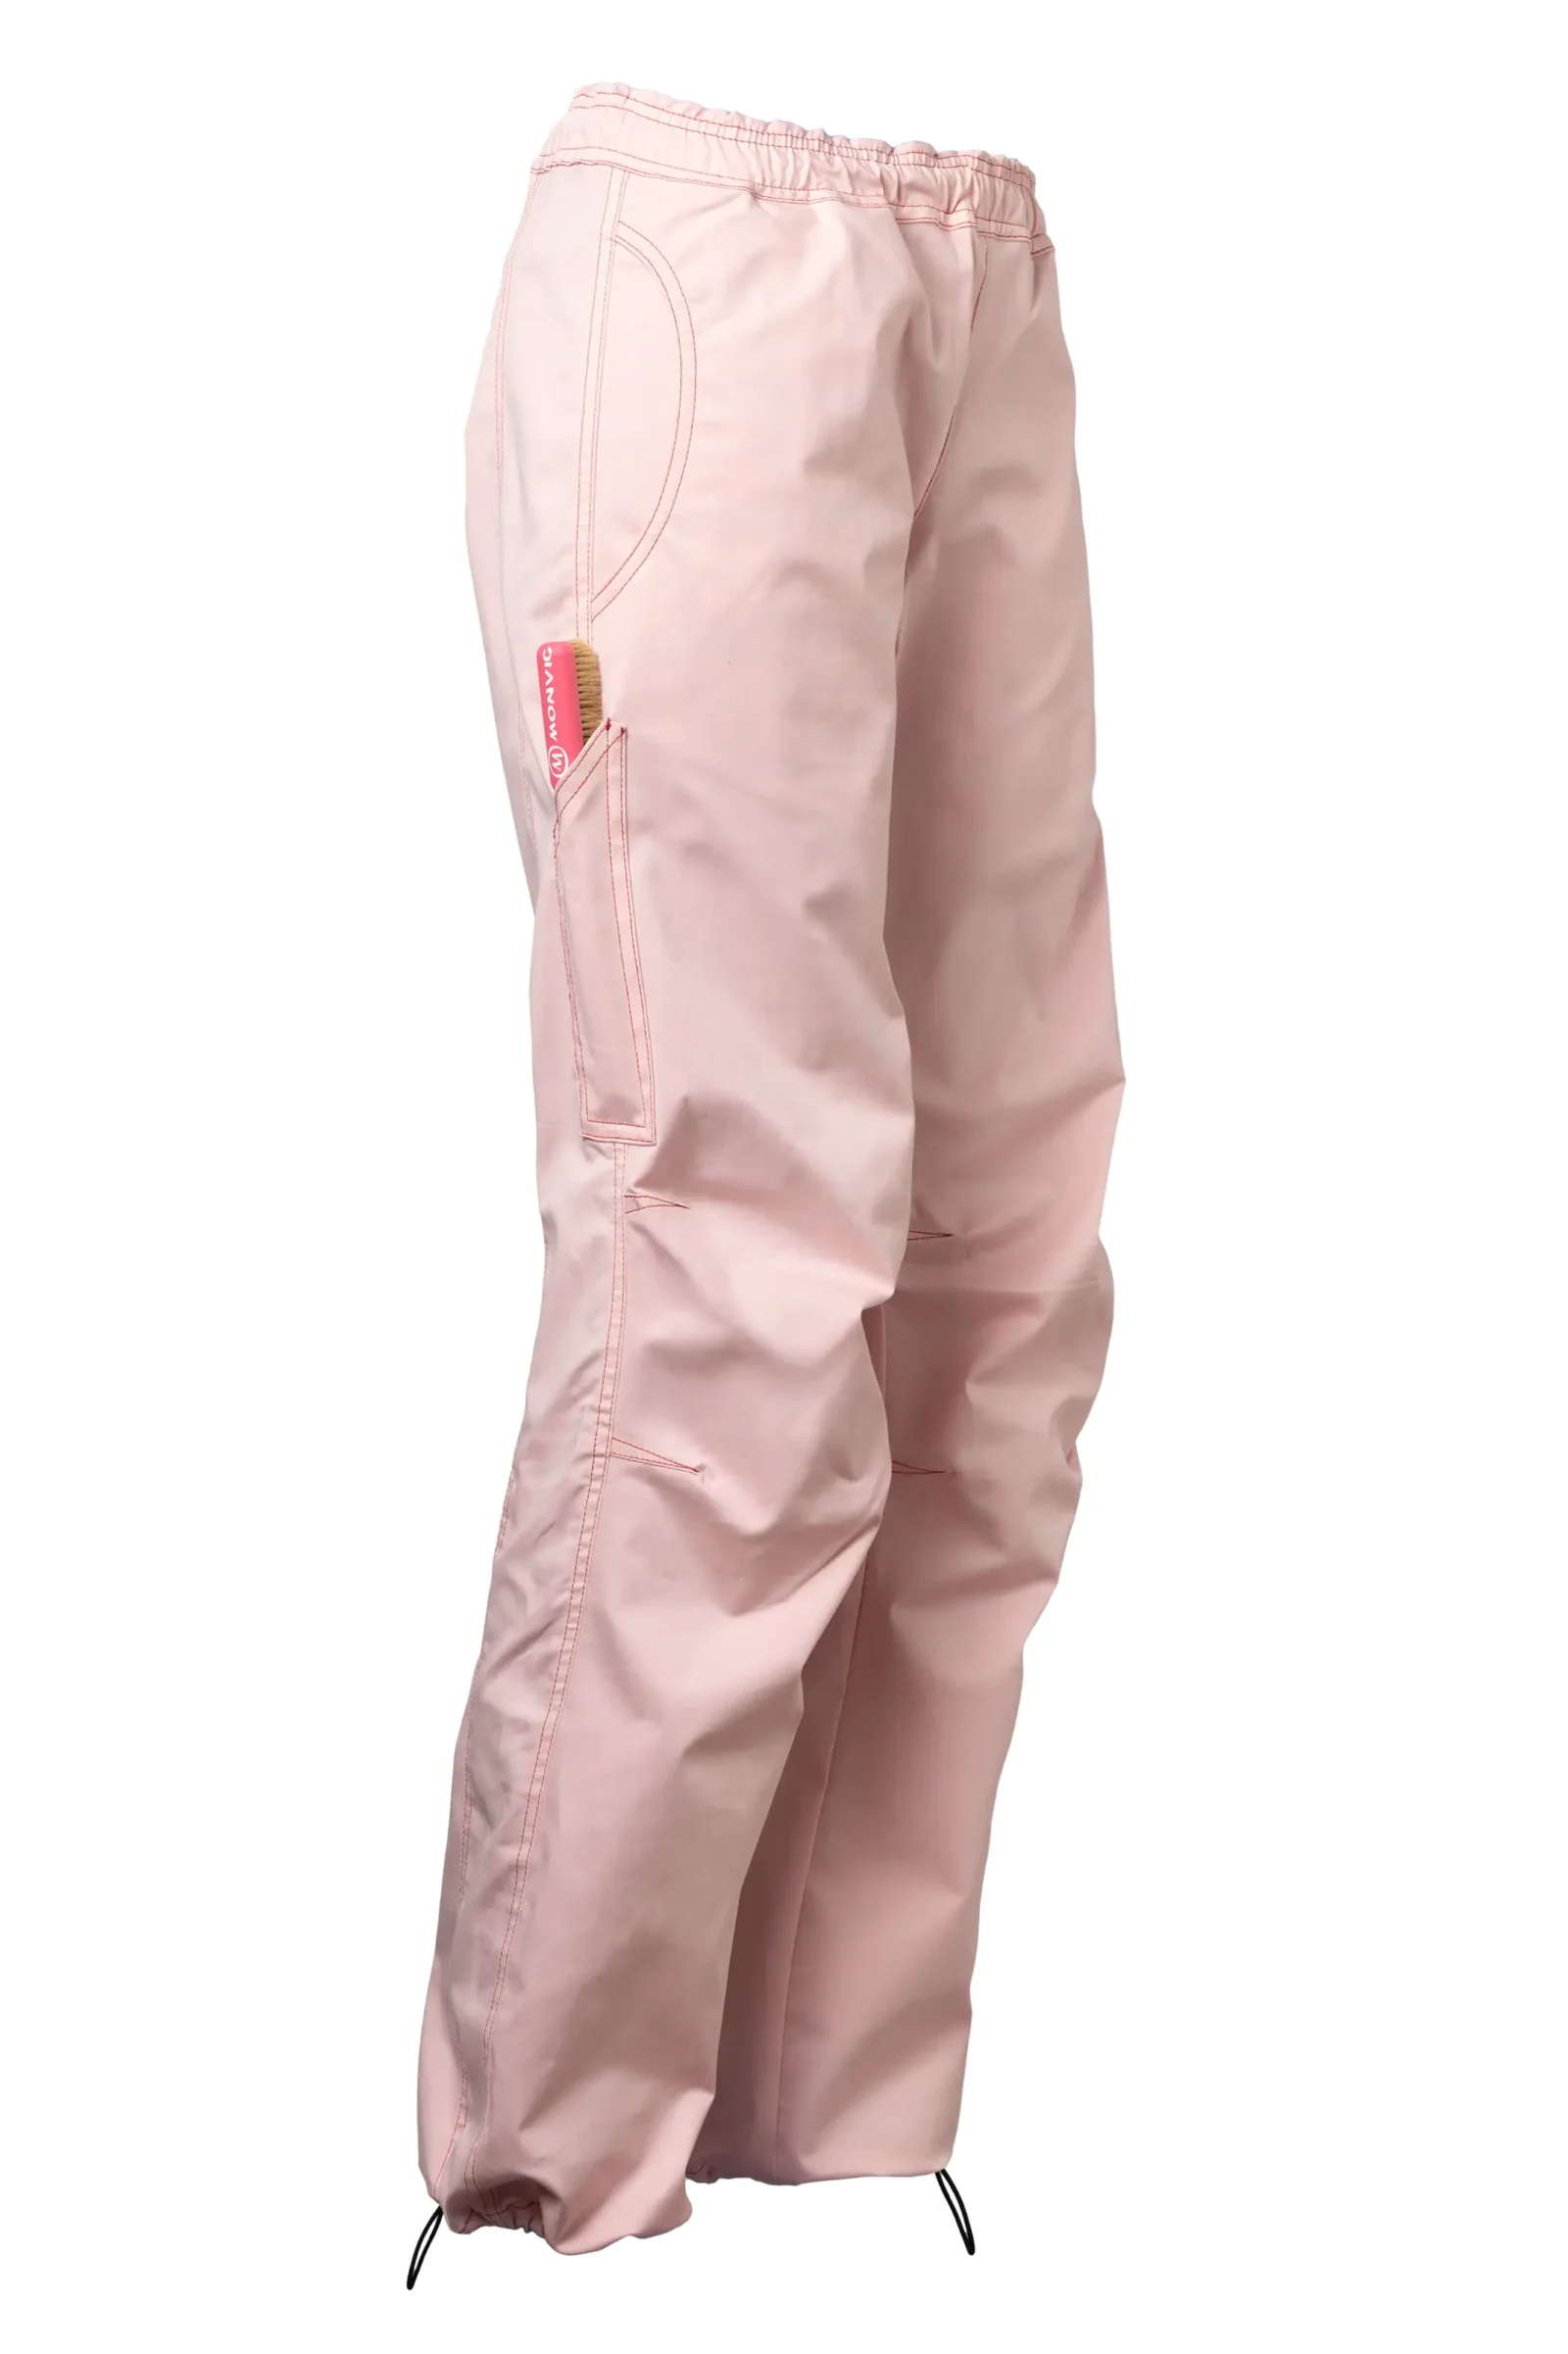 pantalone arrampicata sportiva donna - rosa chiaro VIOLET MONVIC cotone elasticizzato